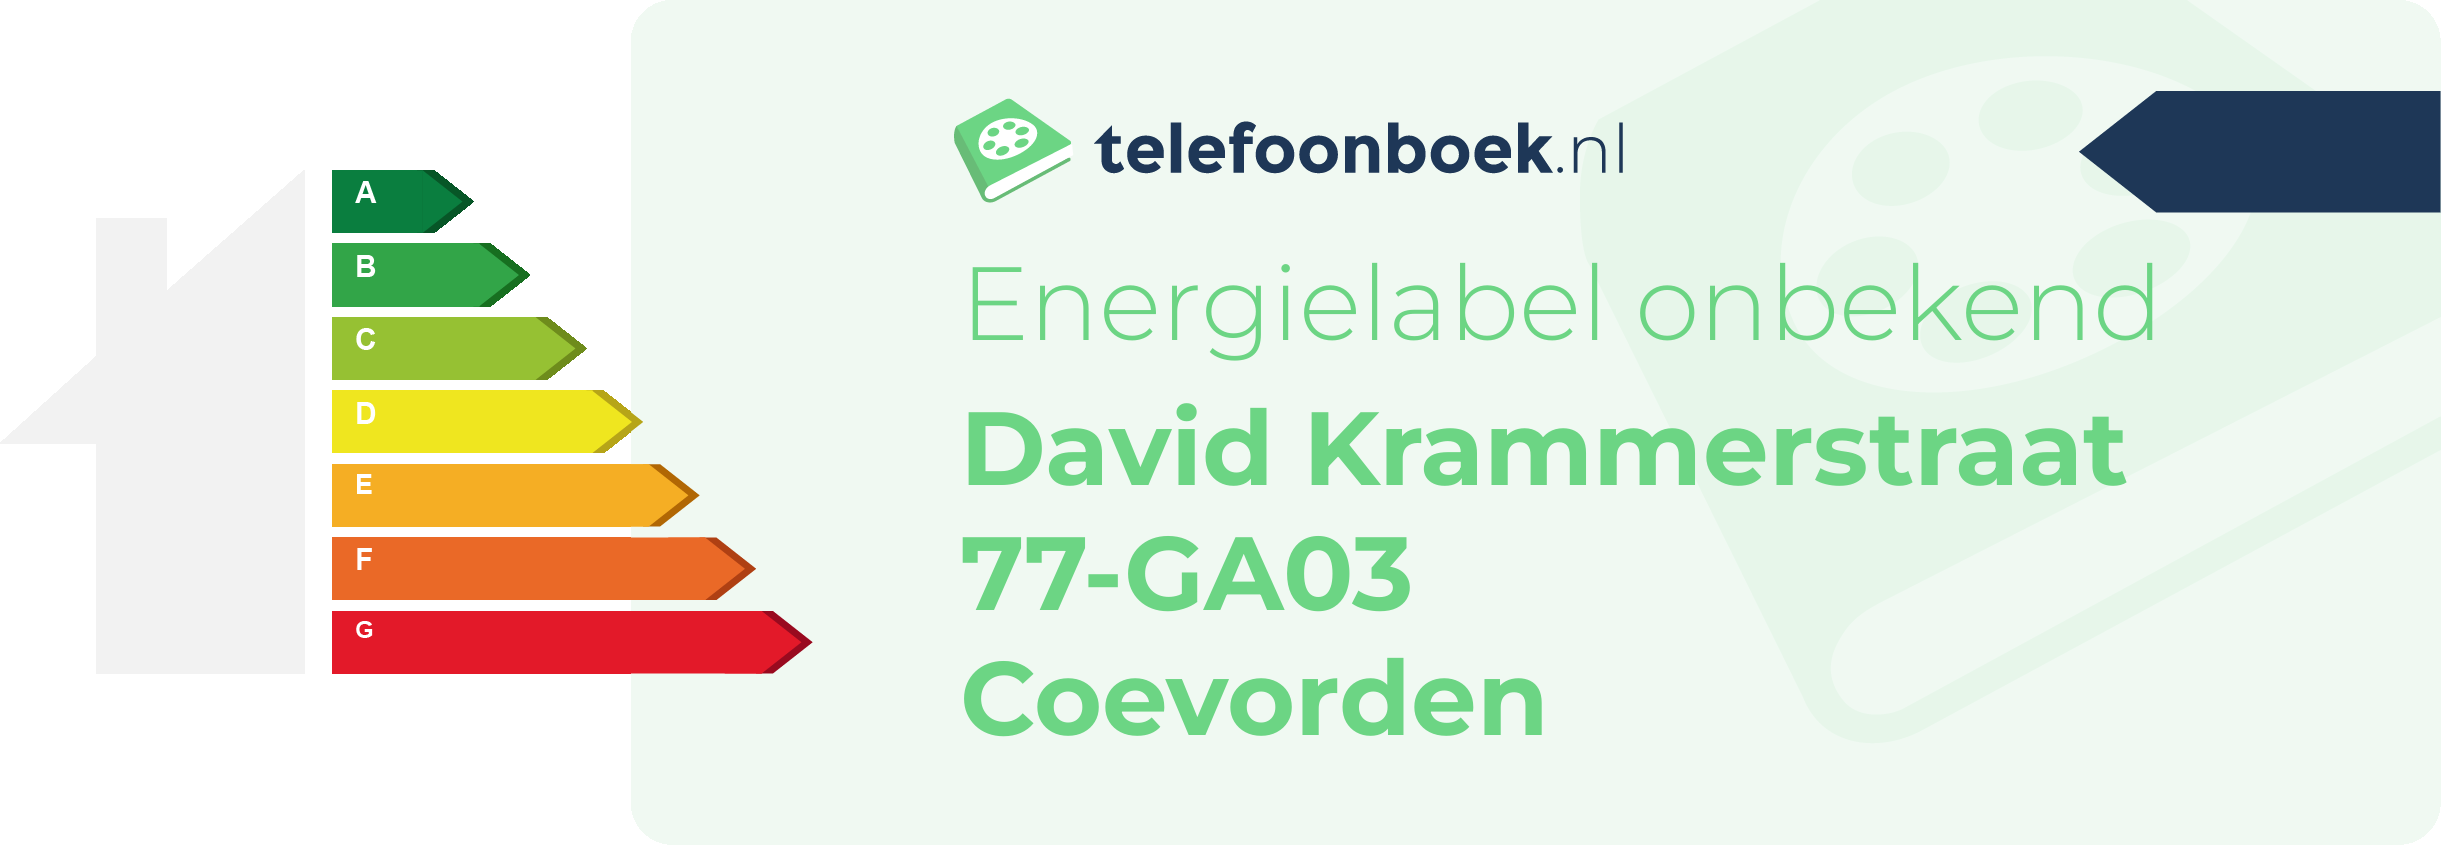 Energielabel David Krammerstraat 77-GA03 Coevorden